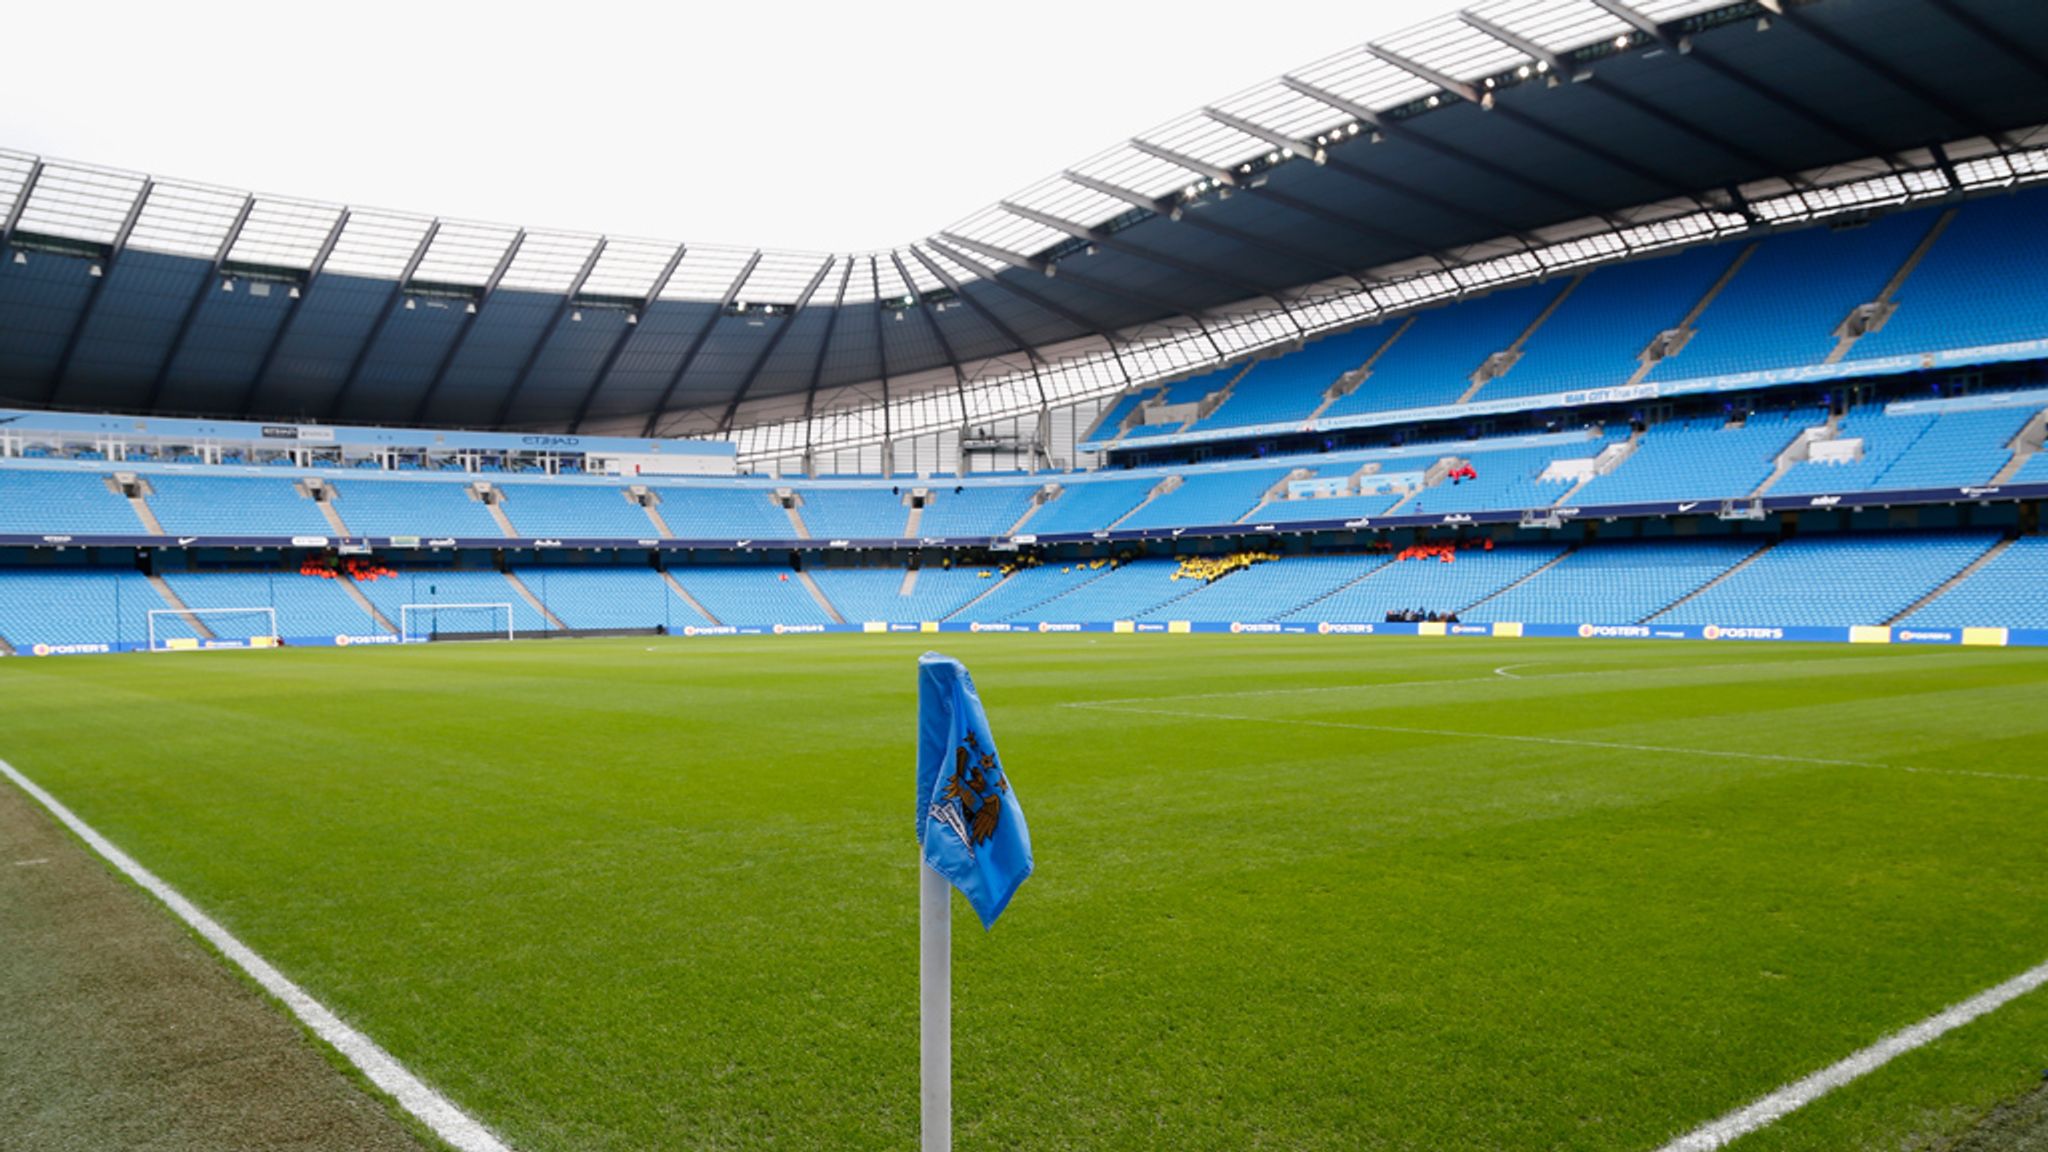 Premier League Manchester City announce new stadium expansion as